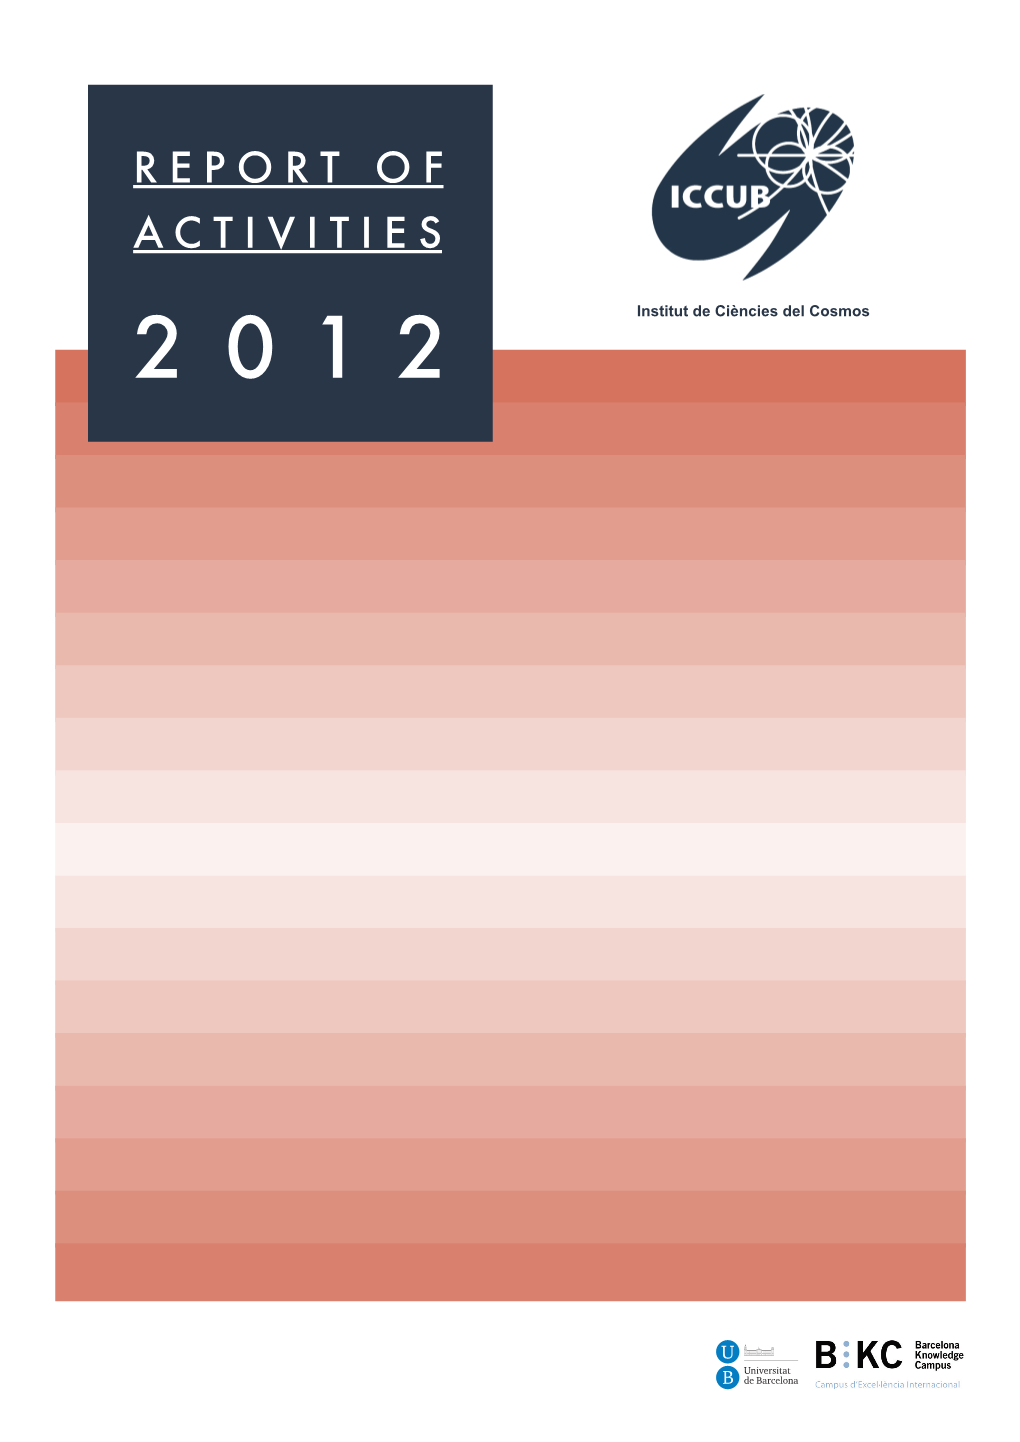 ICCUB Annual Report 2012